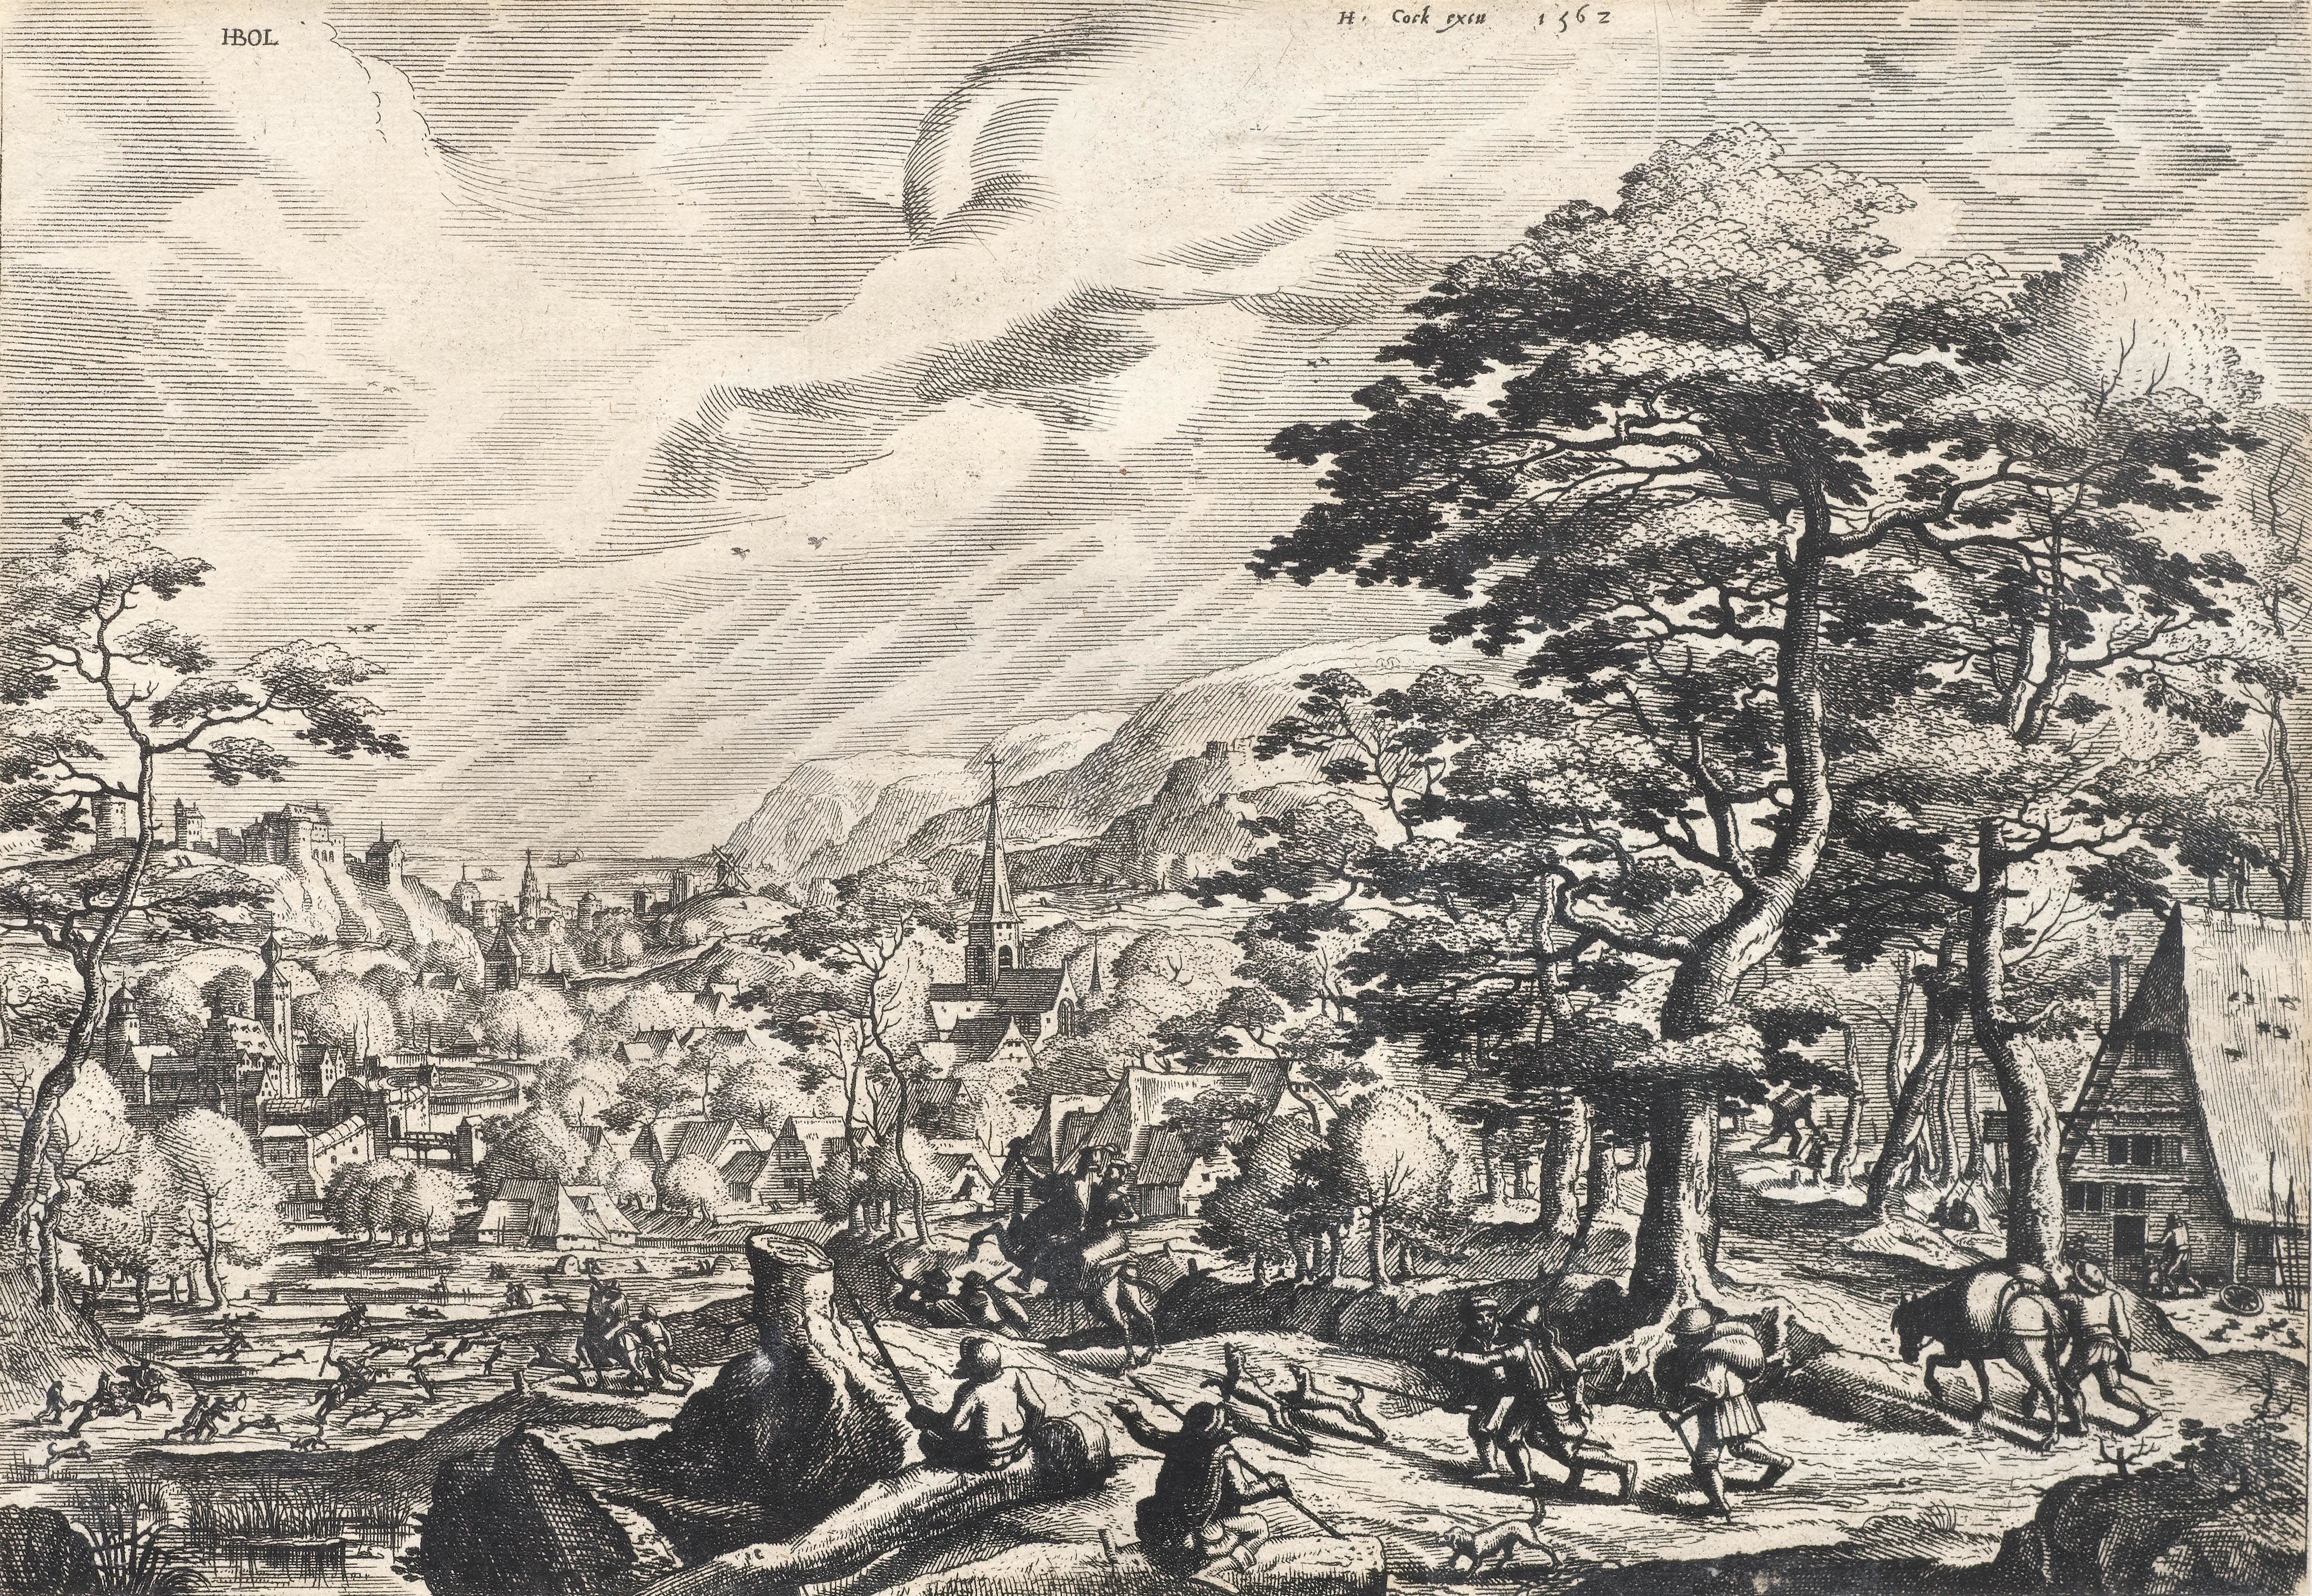 Landschaft mit einer Jagdgesellschaft by Hans Bol, 1562